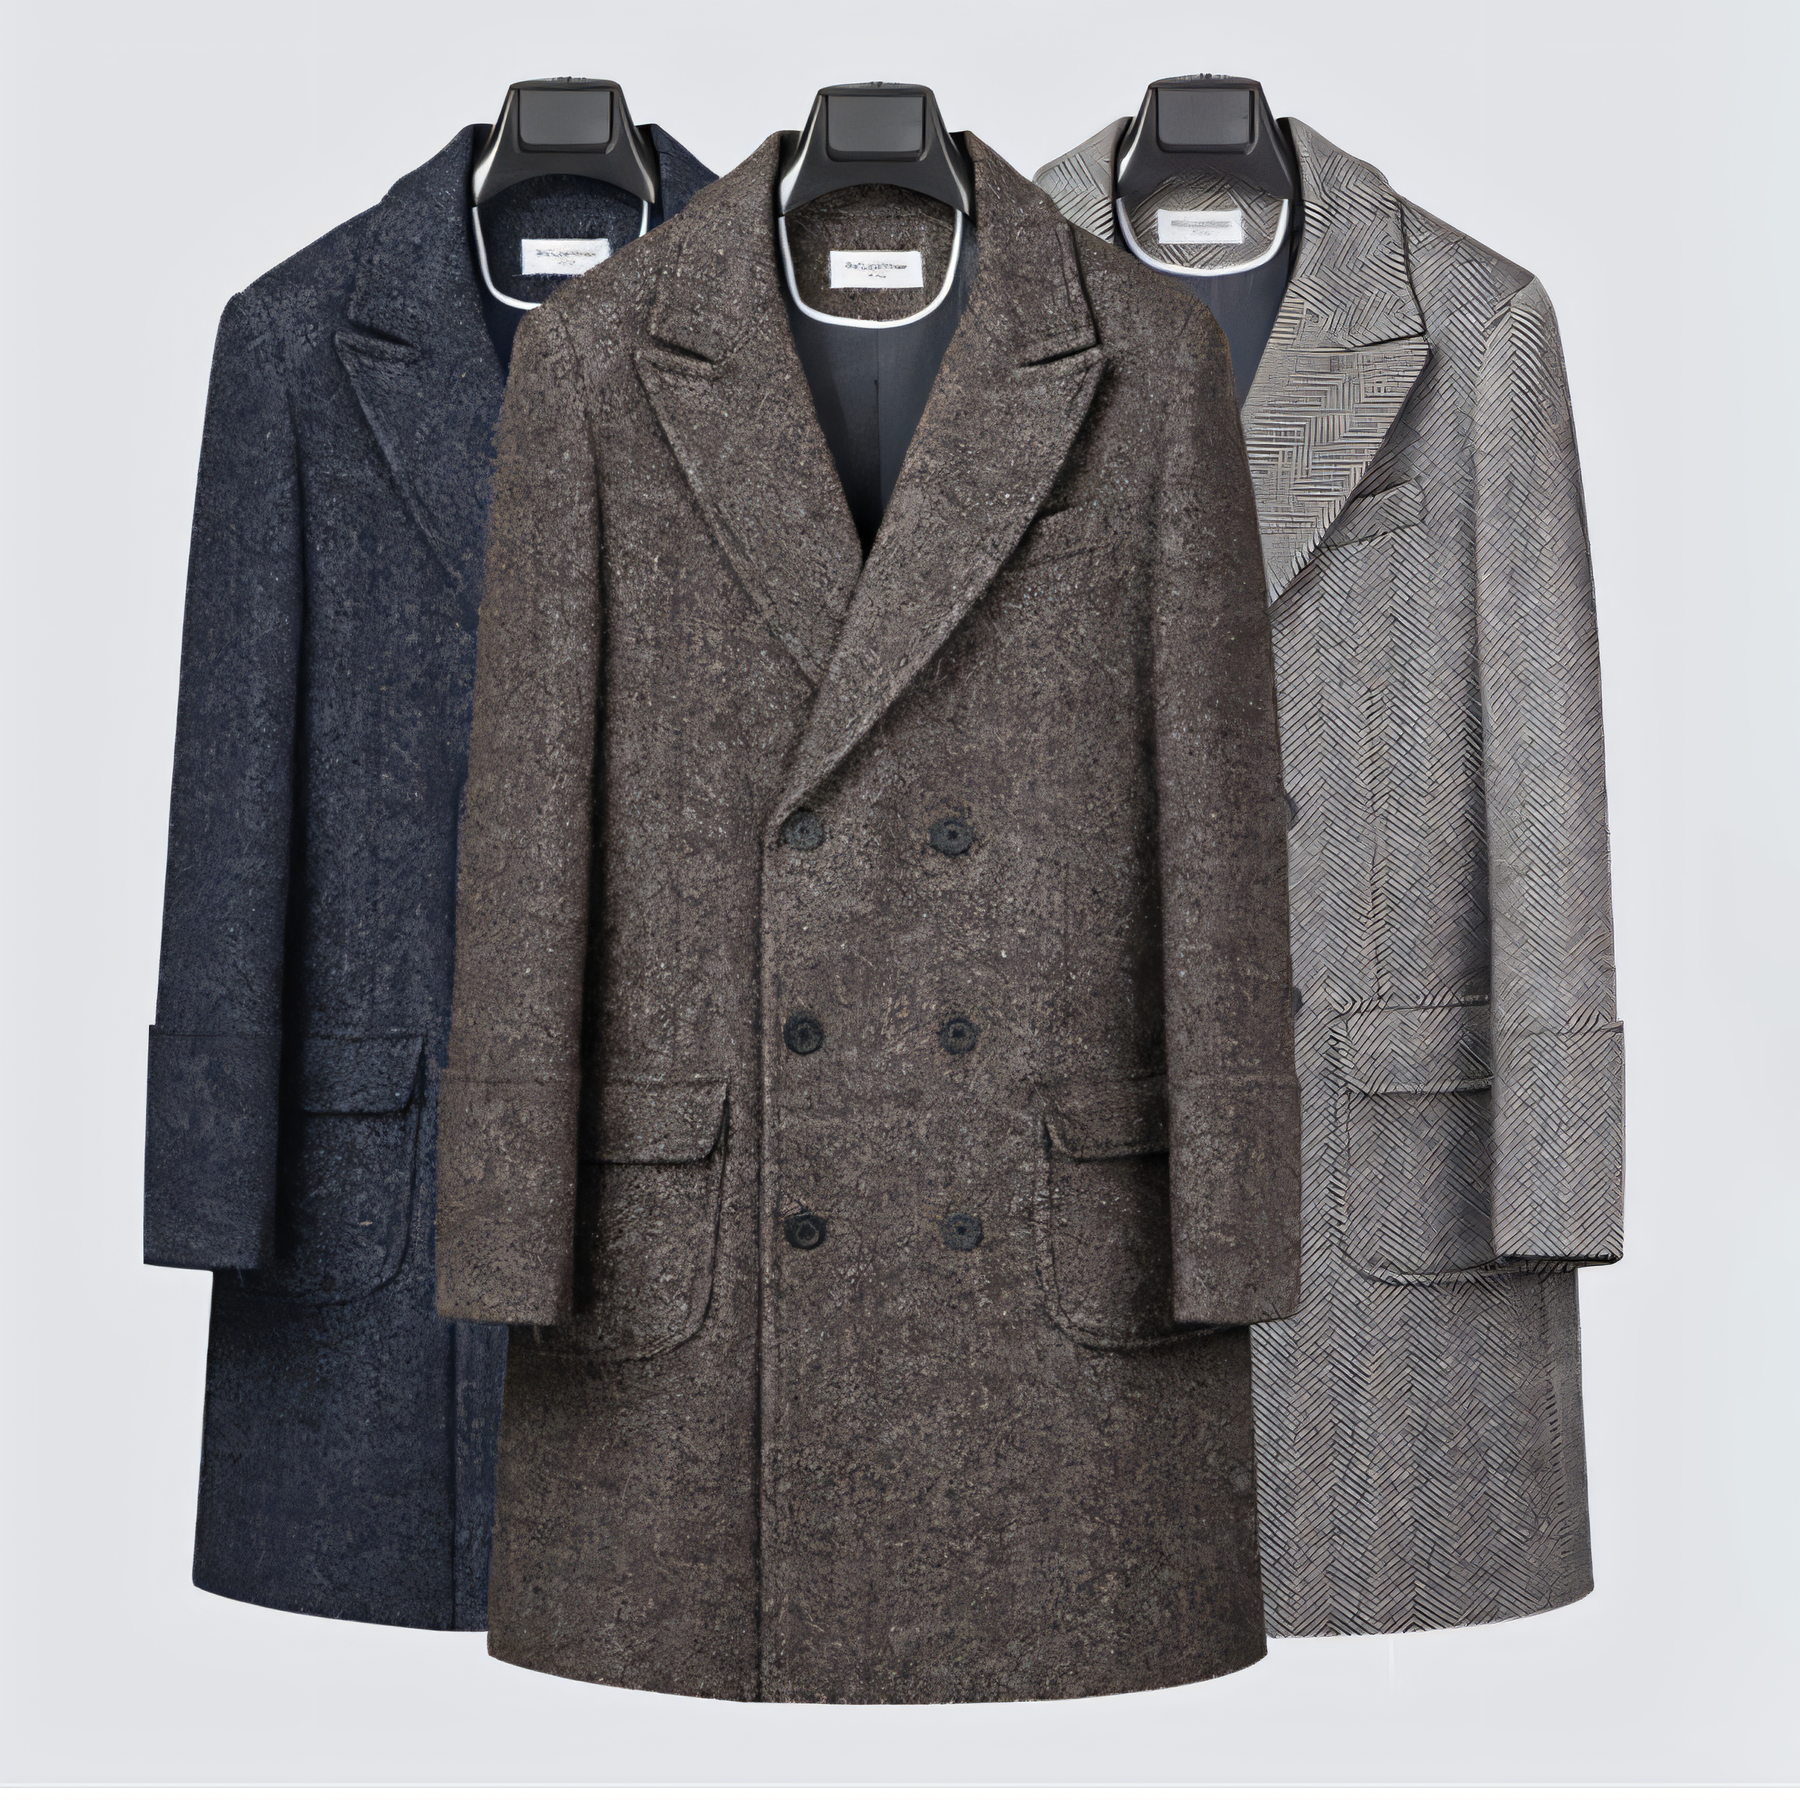 Men's Vintage Tweed Herringbone Double Breasted Long Overcoat